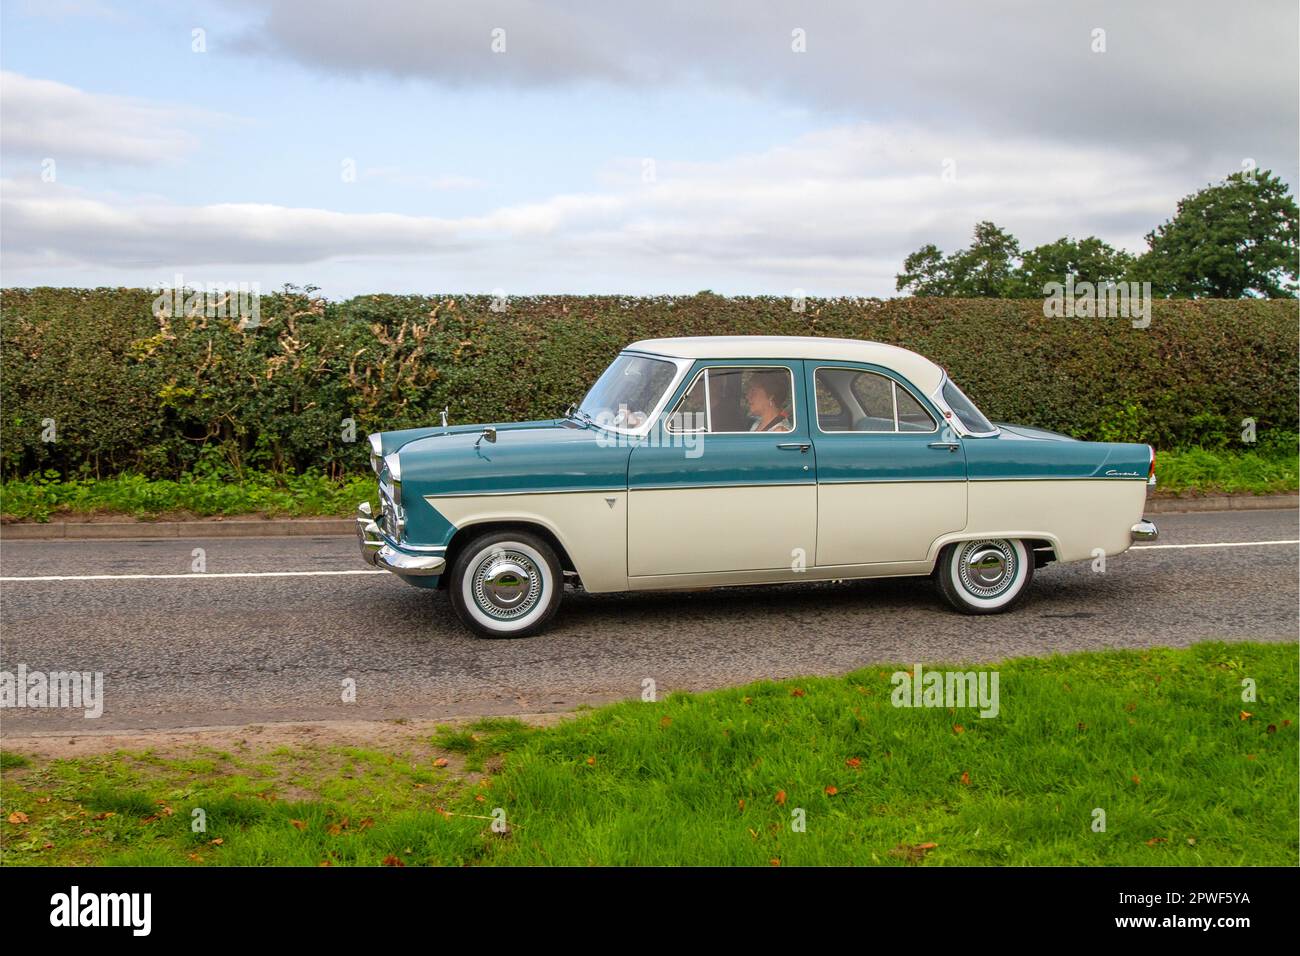 1960 60s années 60, bleu crème British Ford Consul Blue Pétrol 1703 cc; voiture classique isolée voyageant sur une voie de campagne à Congleton, Royaume-Uni Banque D'Images